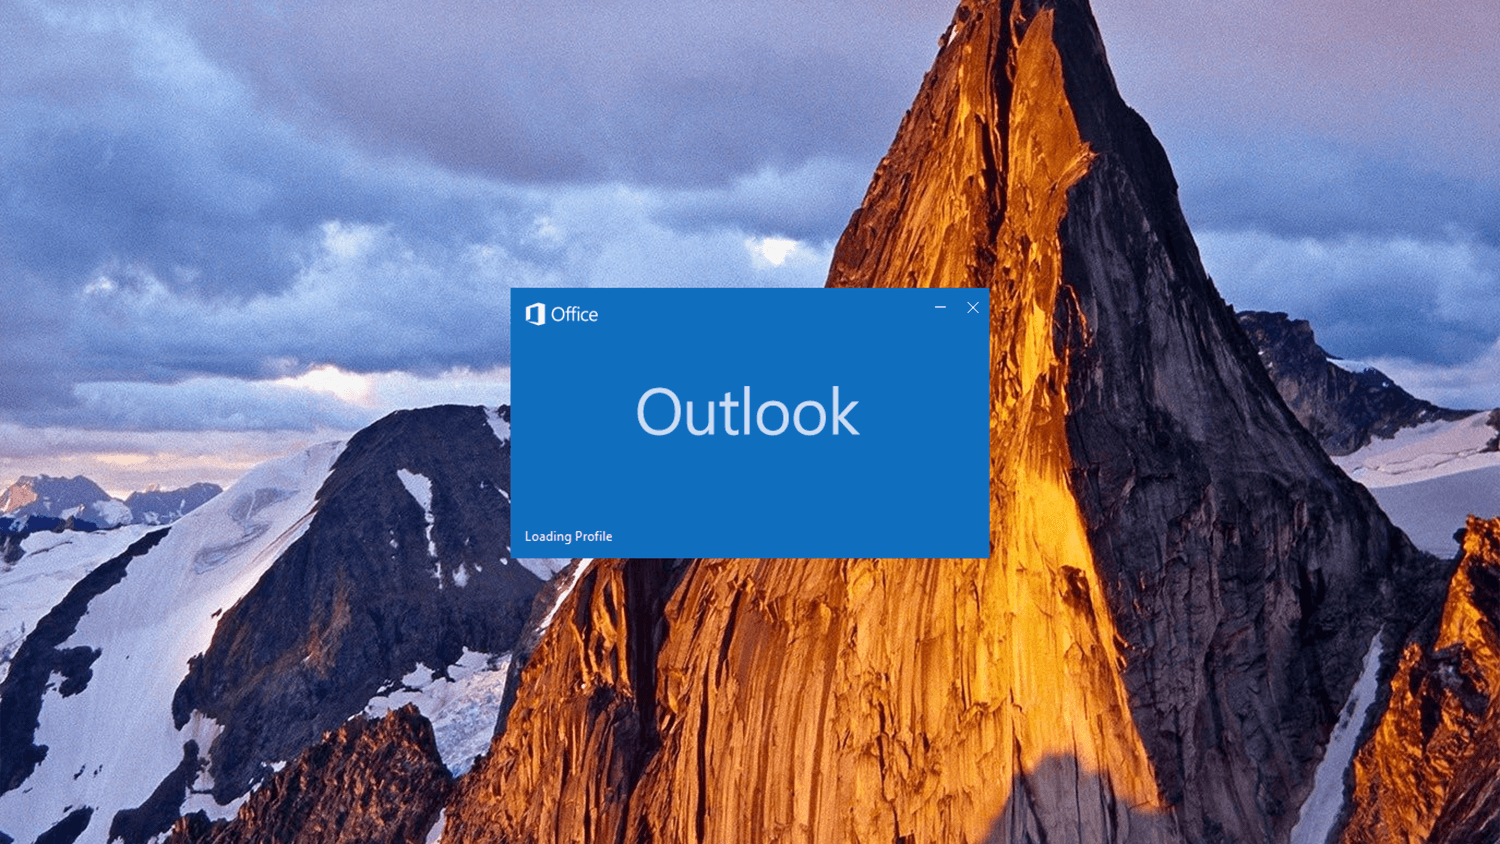 start outlook 2019 in safe mode windows 10